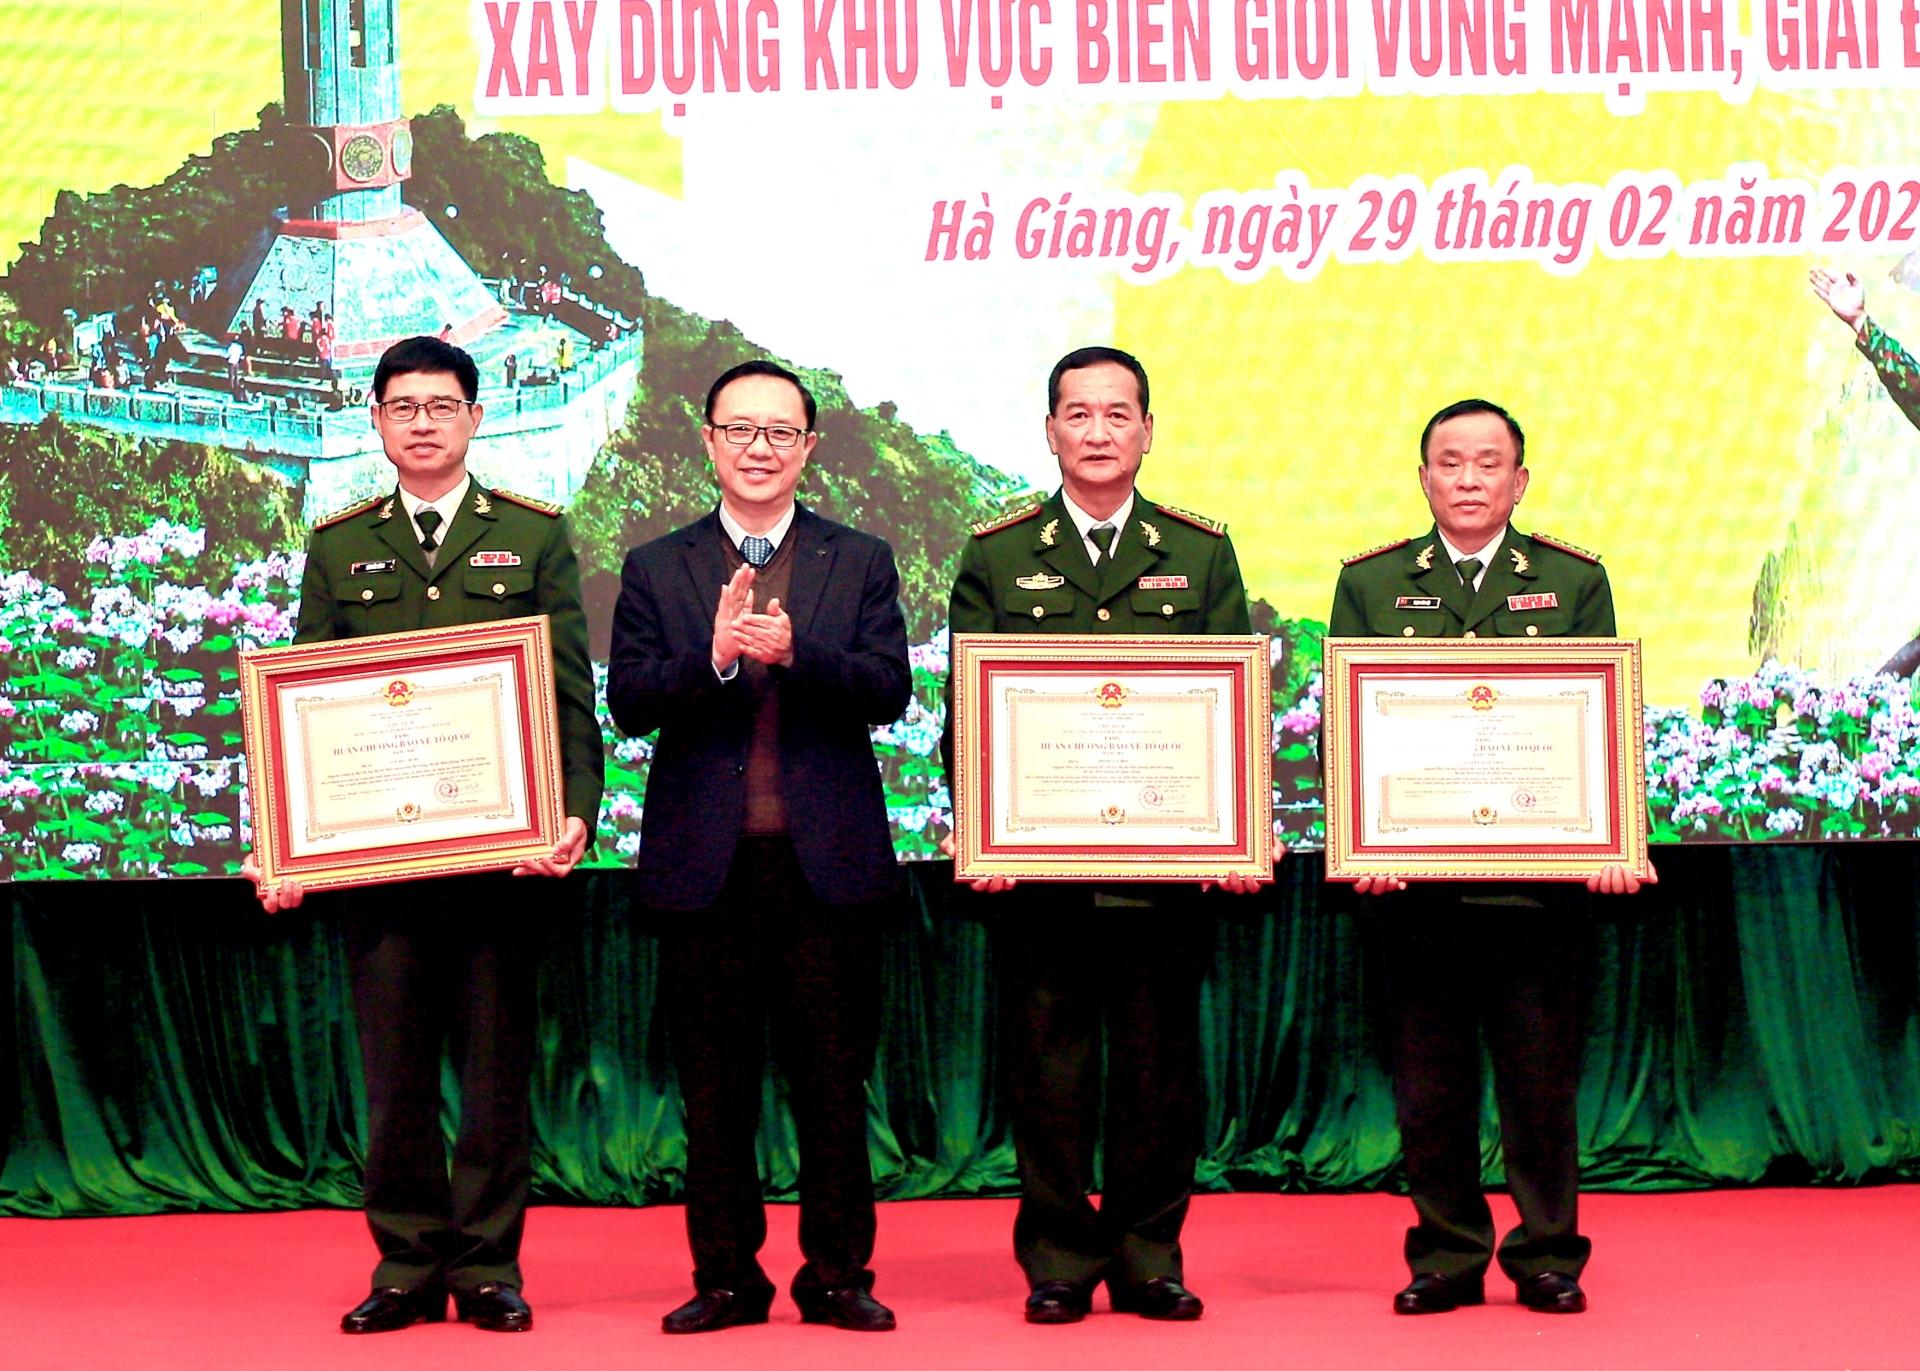 Phó Bí thư Thường trực Tỉnh ủy, Chủ tịch HĐND tỉnh Thào Hồng Sơn trao tặng Huân chương Bảo vệ Tổ quốc hạng 2 và hạng 3 cho các cá nhân.